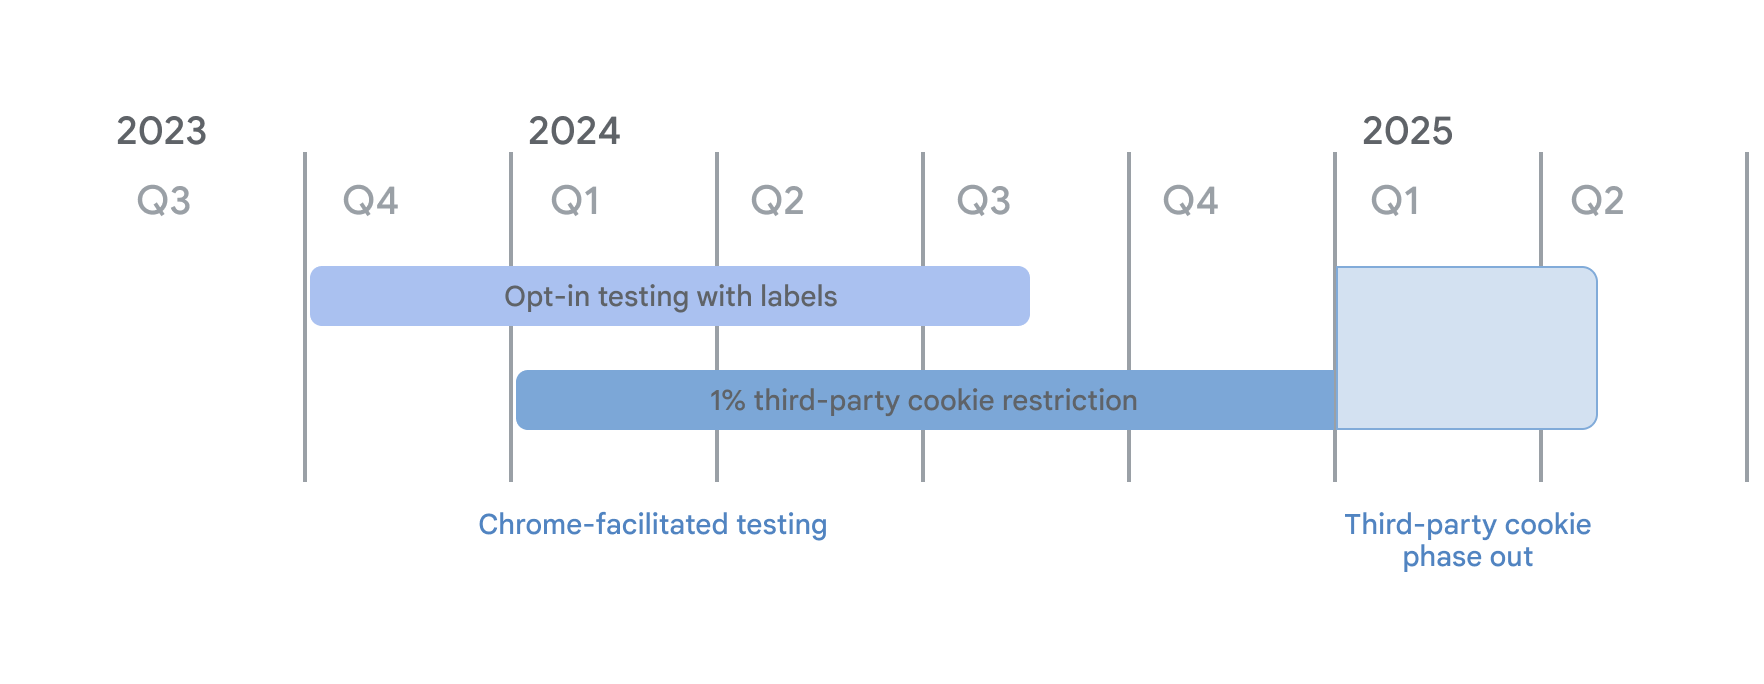 弃用第三方 Cookie 的时间表。作为 Chrome 协助测试的一部分，“使用标签模式选择启用测试”从 2023 年第 4 季度开始，并于 2024 年 1 月 4 日开始针对 1% 的 3PC 限制。直到 2025 年第 1 季度，第三方 Cookie 逐步淘汰开始。